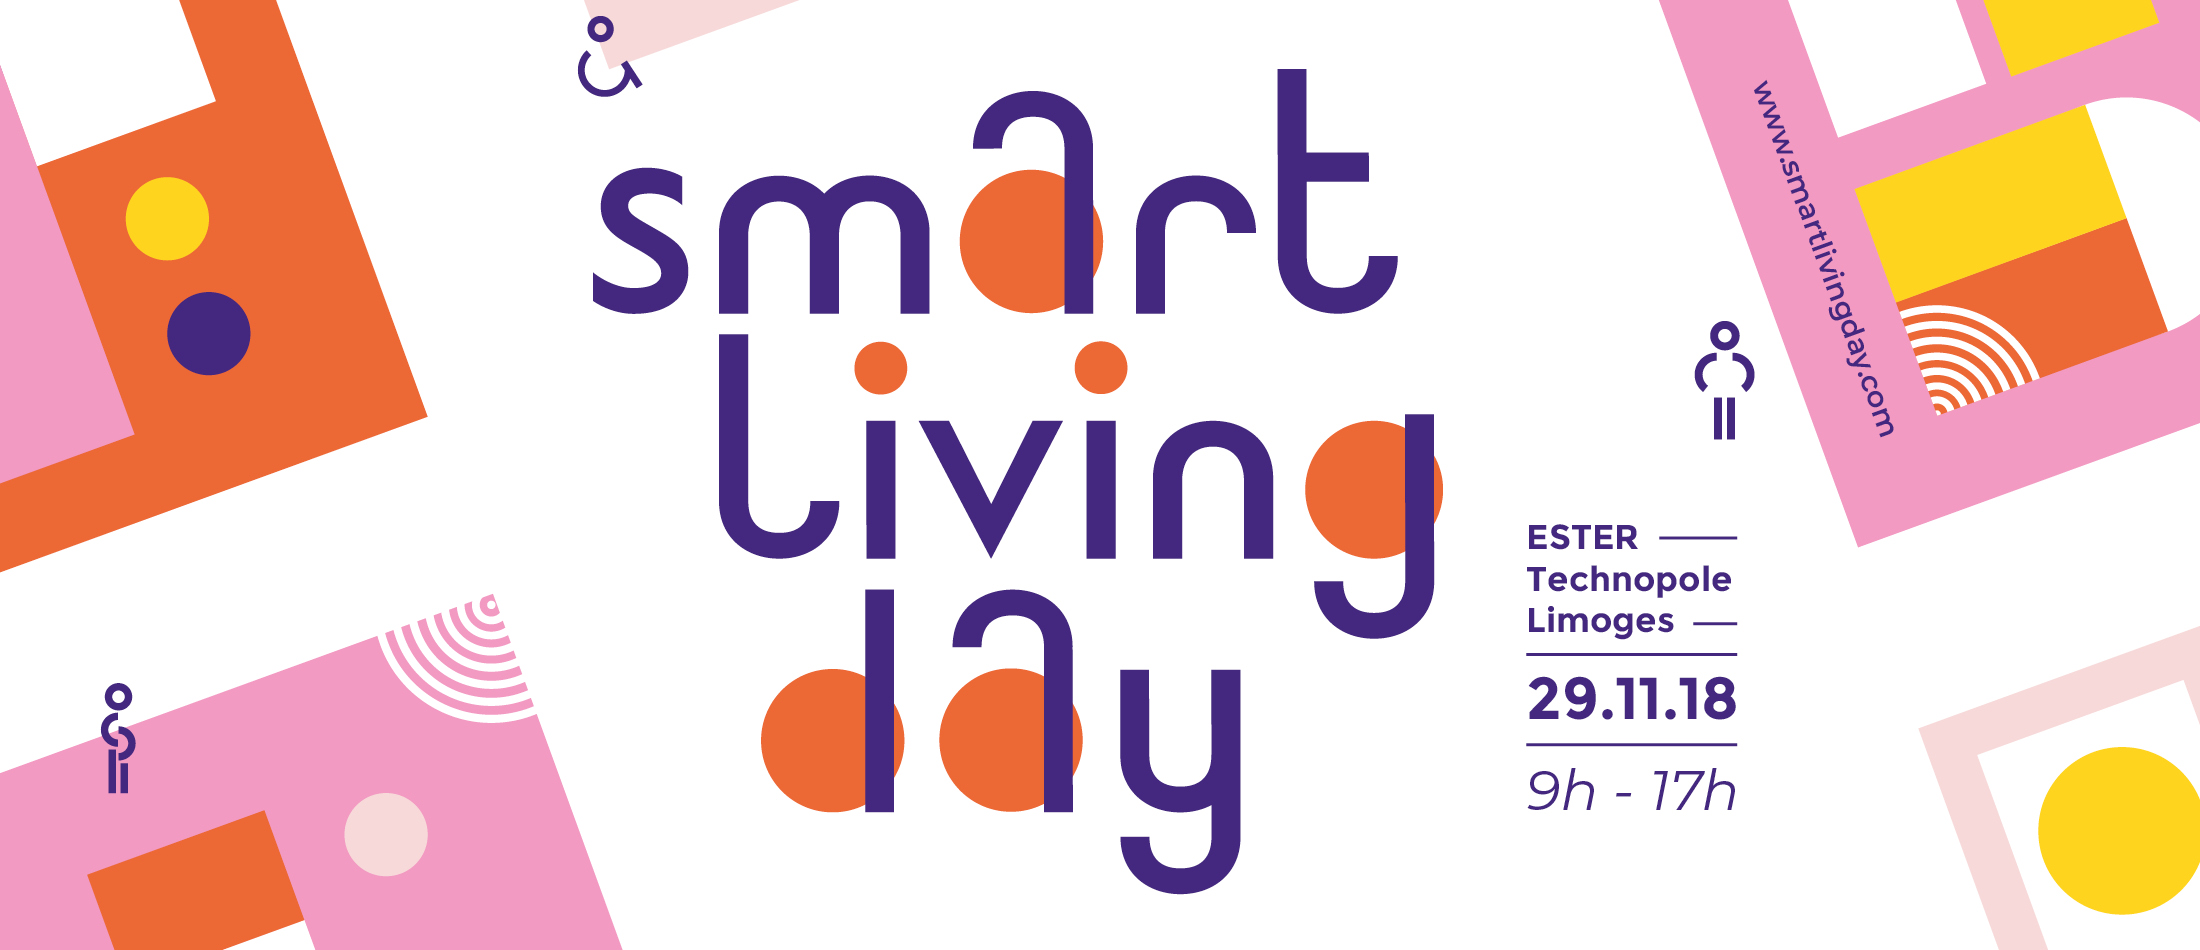 Illustration article SMART LIVING DAY : Usages et technologies pour une meilleure santé et autonomie